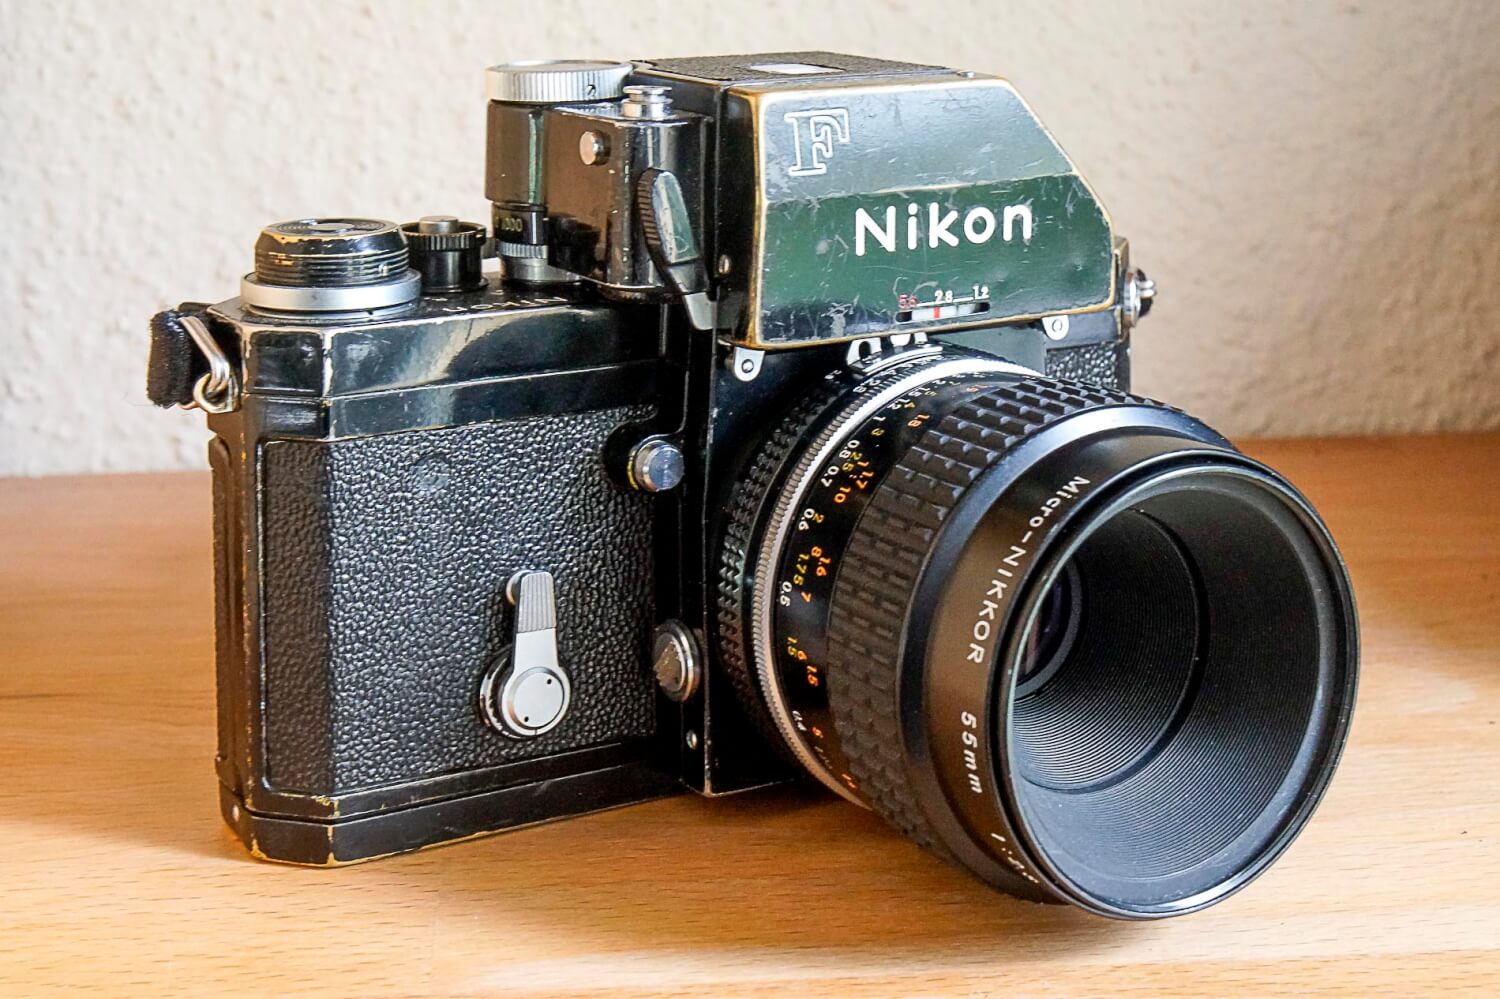 Nikon F + Nikon Micro-Nikkor 55mm f/2.8